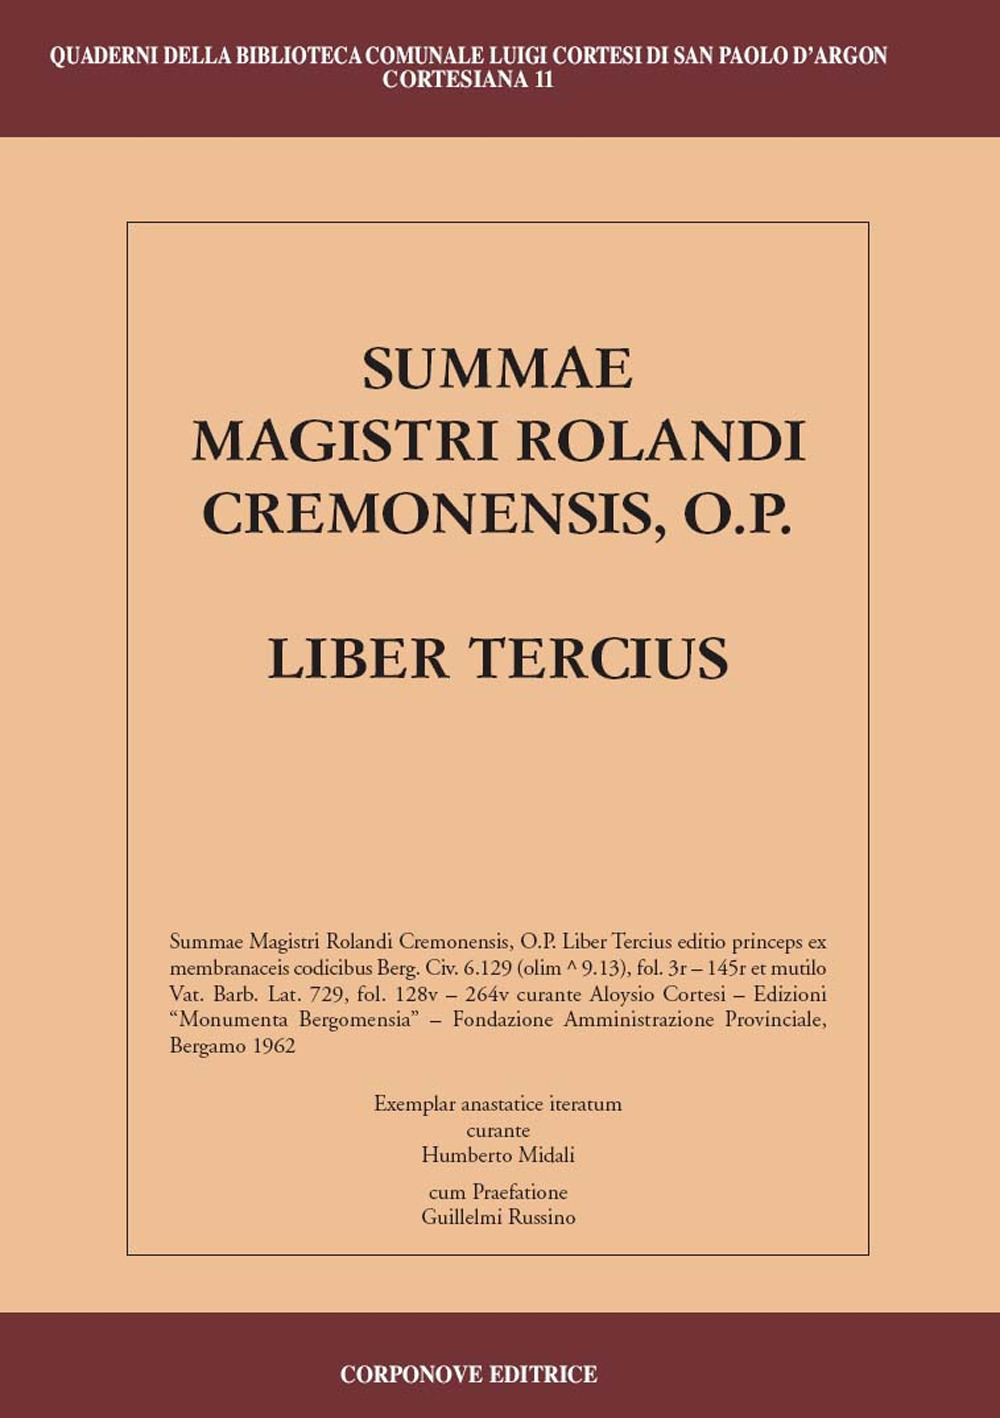 Summae Magistri Rolandi Cremonensis, O.p. Liber tercius. Testo latino a fronte